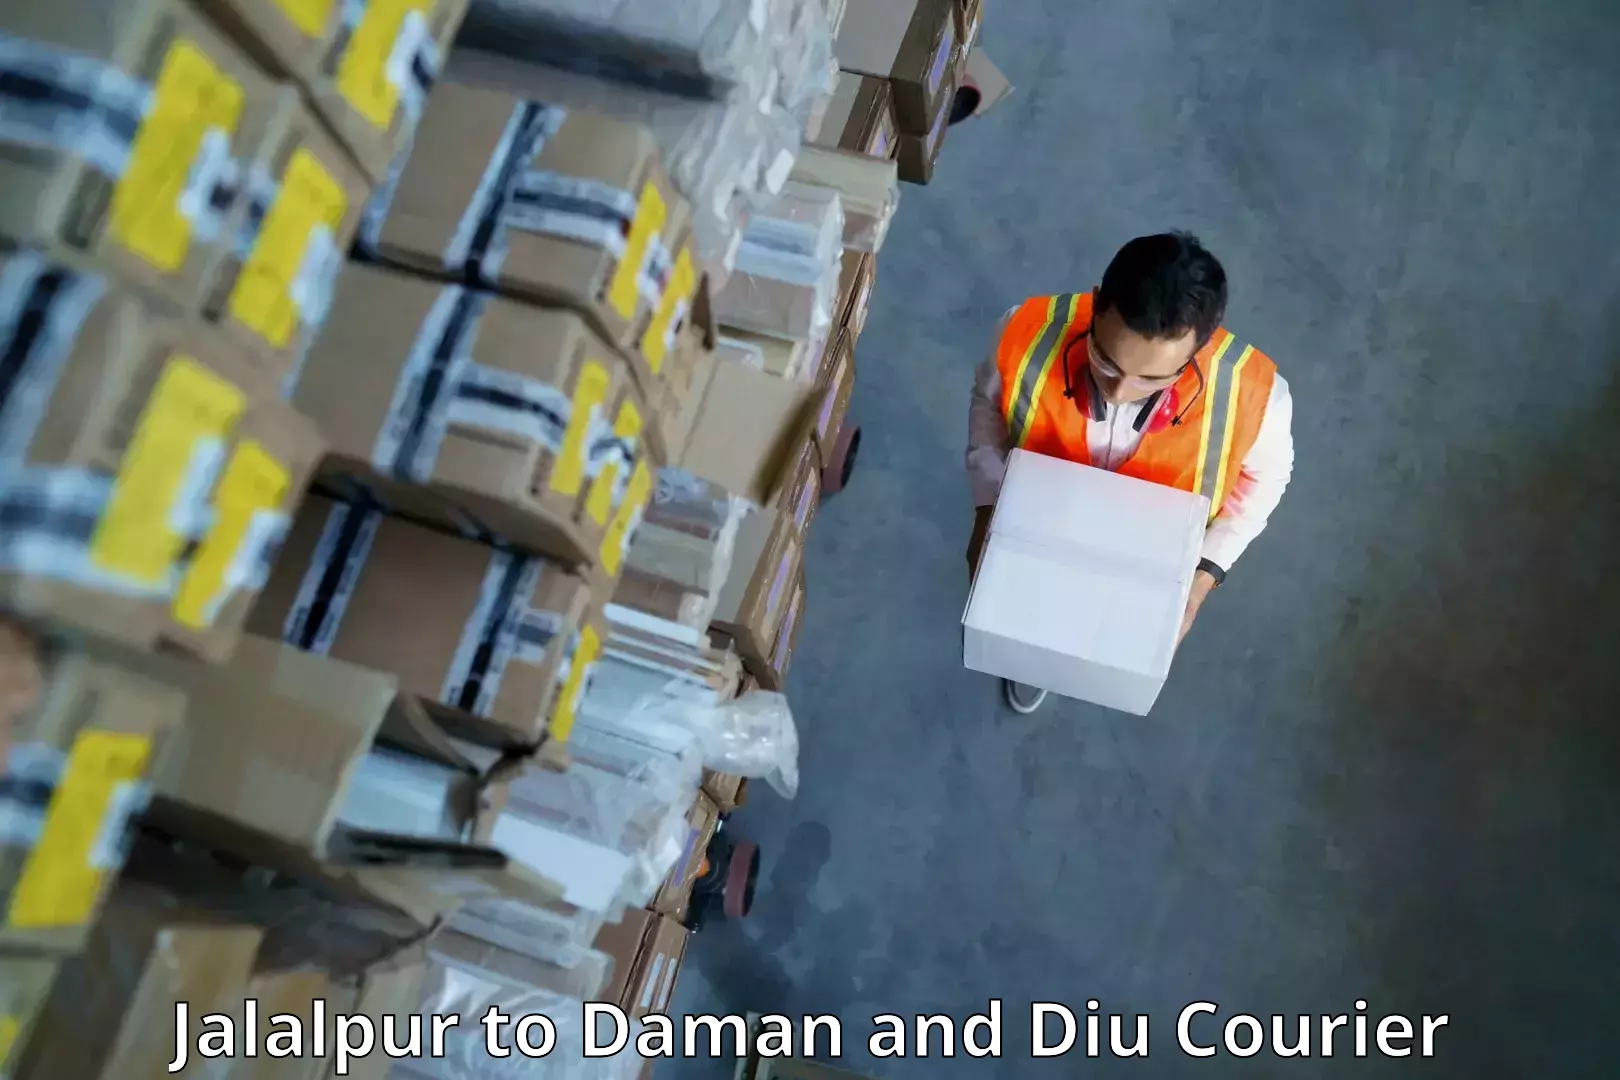 Cargo courier service Jalalpur to Daman and Diu